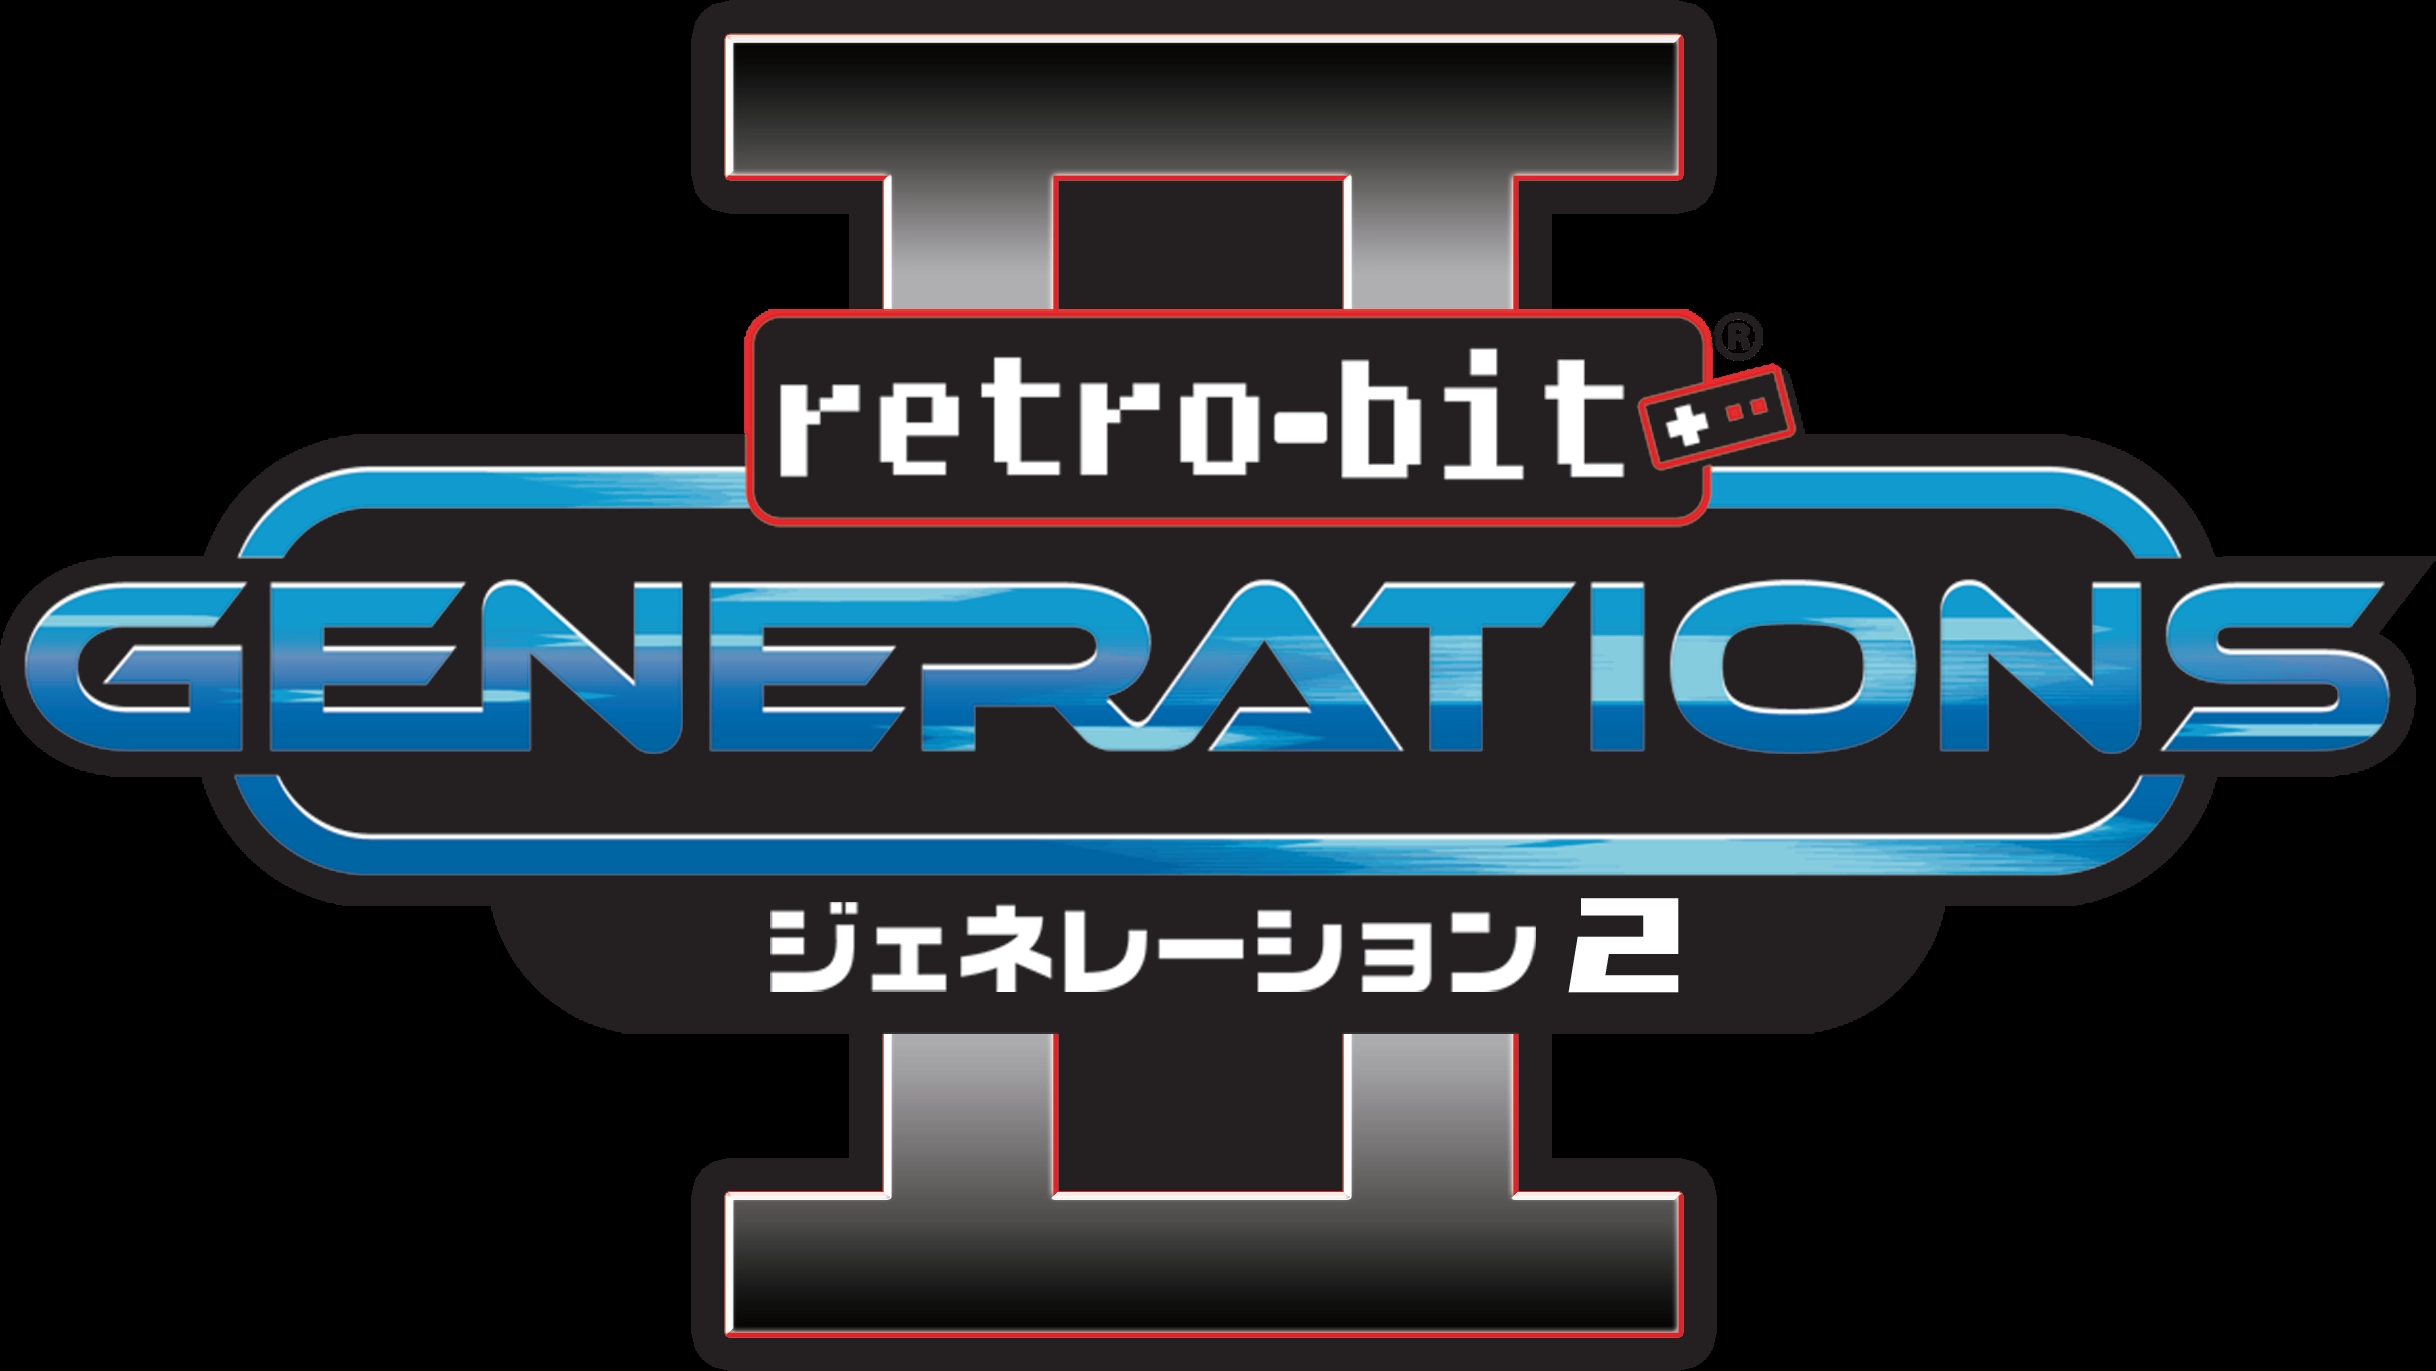 ふるいちオンライン - ジェネレーション2 Retro-bit GENERATIONS2